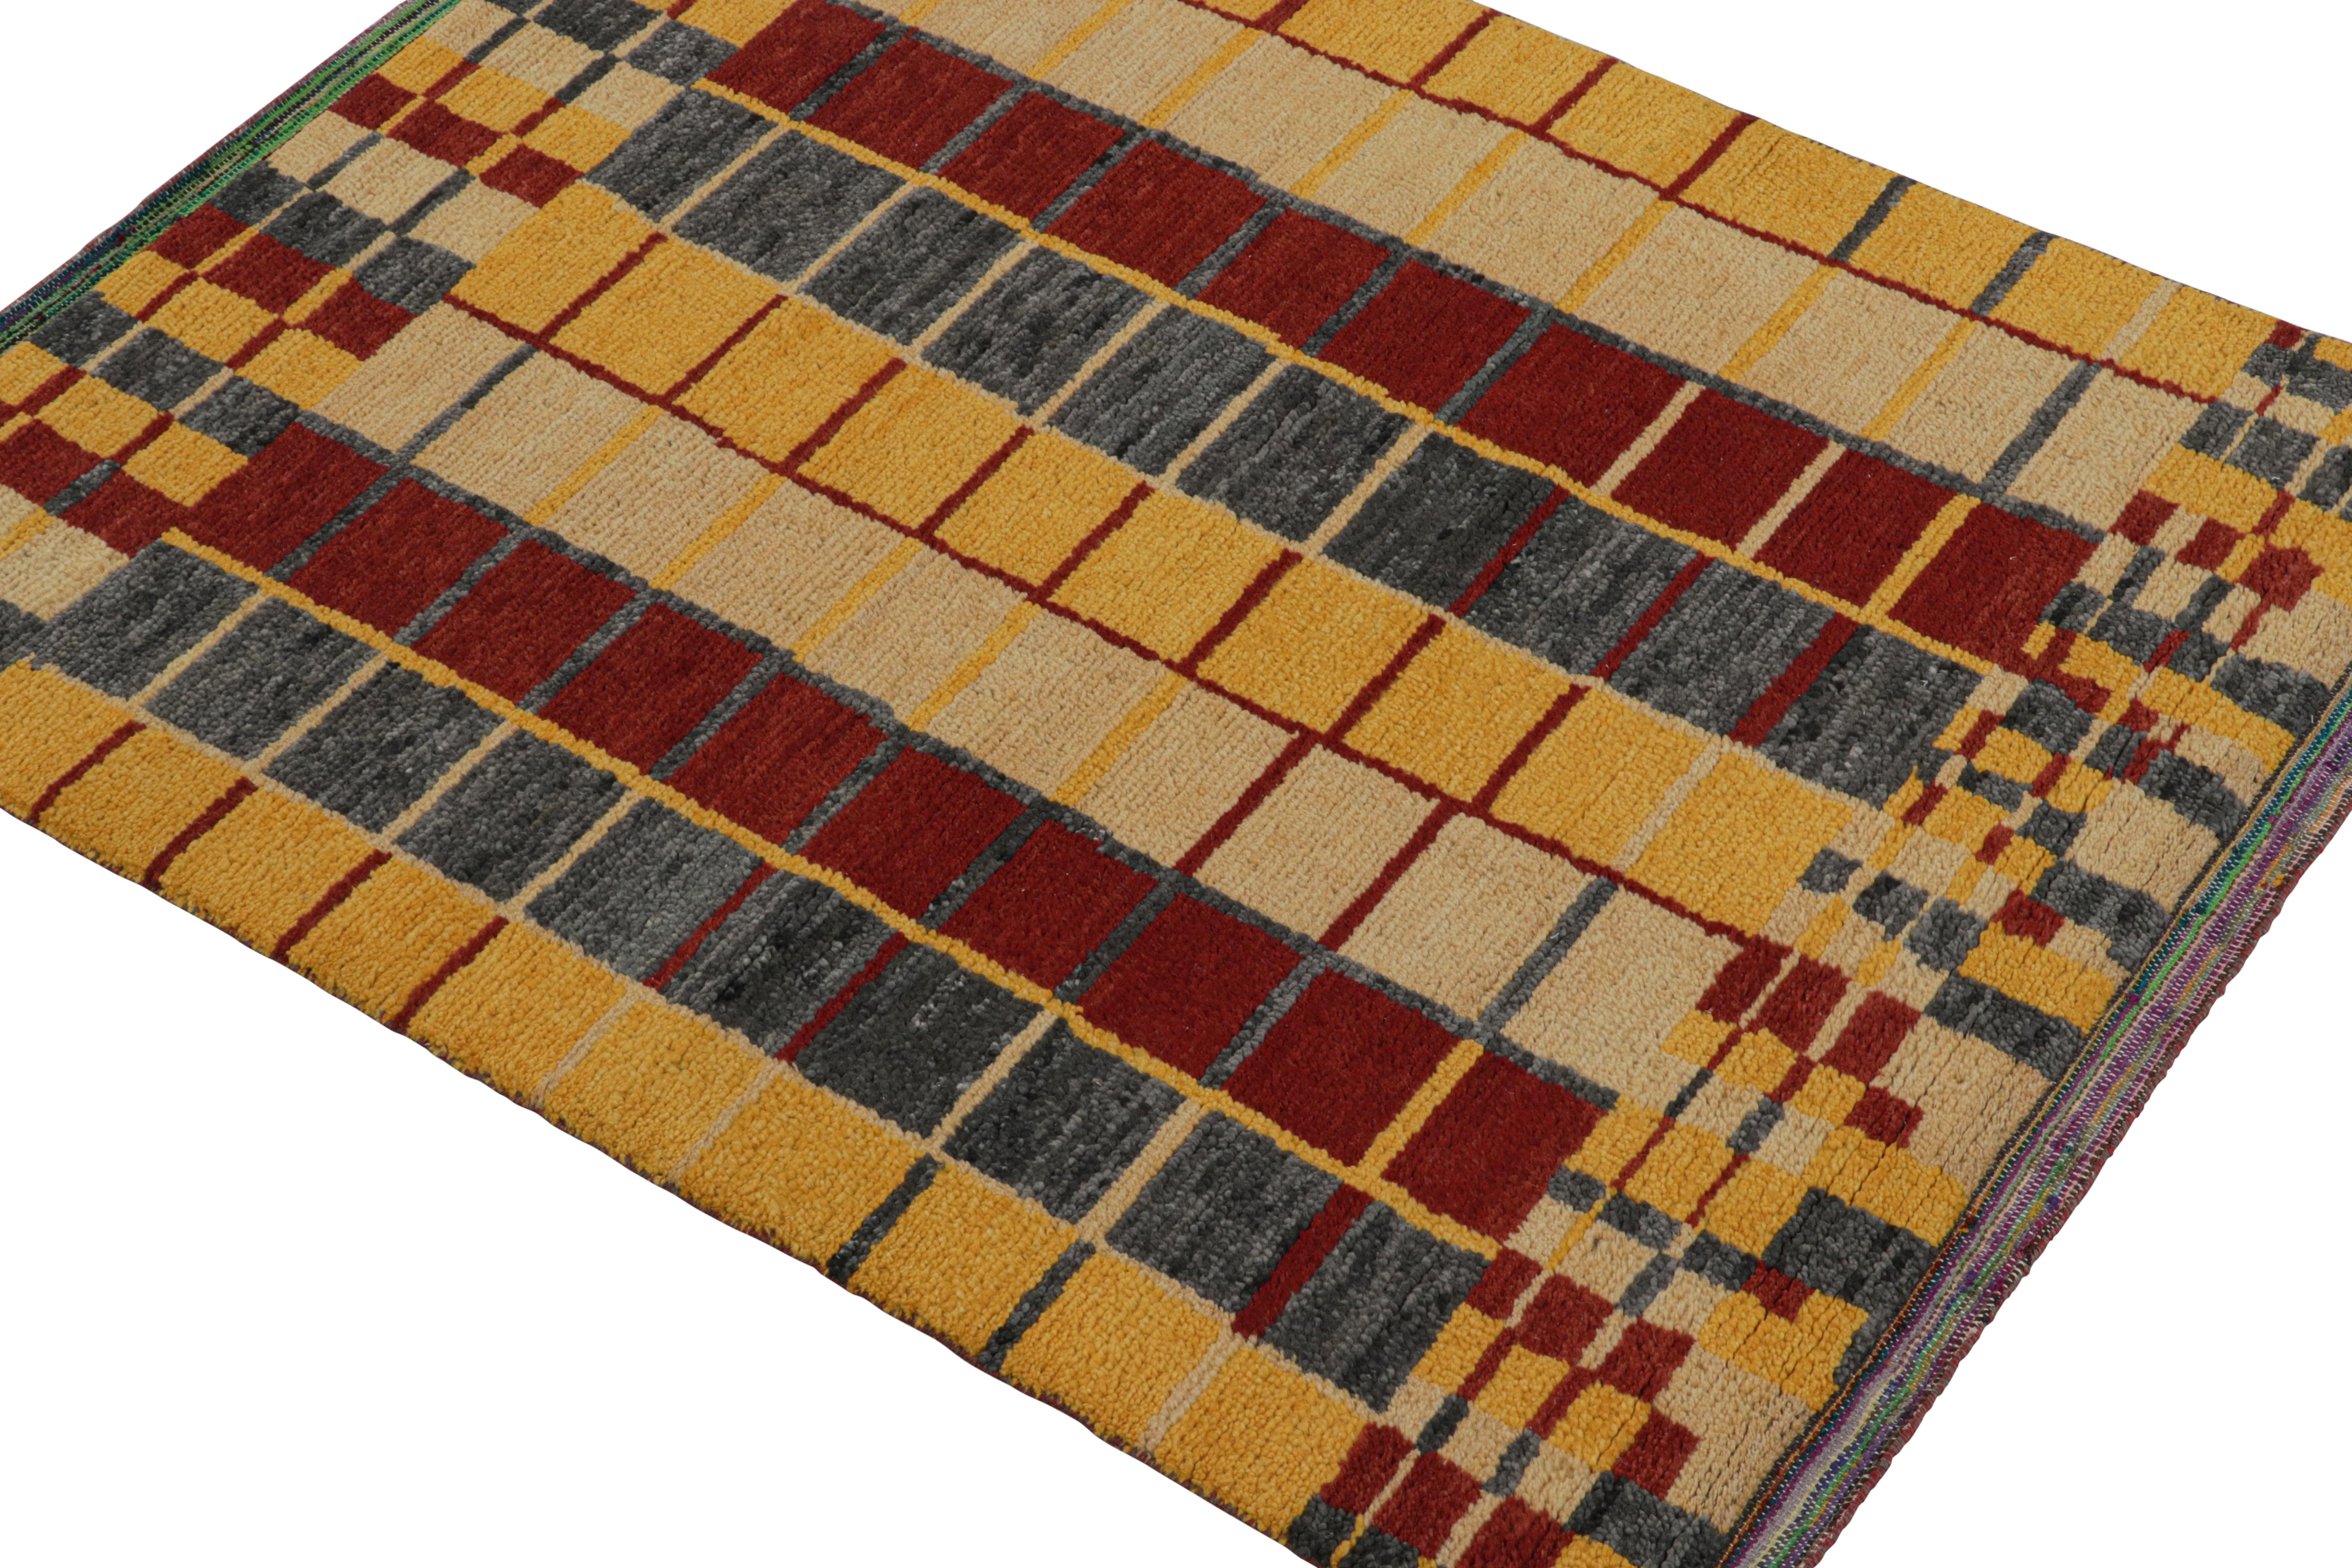 Dieser moderne Teppich im Format 5x6 ist das neueste Produkt der neuen Marokko-Kollektion von Rug & Kilim - eine kühne Interpretation des ikonischen Stils. Handgeknüpft aus einer Mischung aus Wolle, Seide und Baumwolle.
Weiter zum Design:
Das